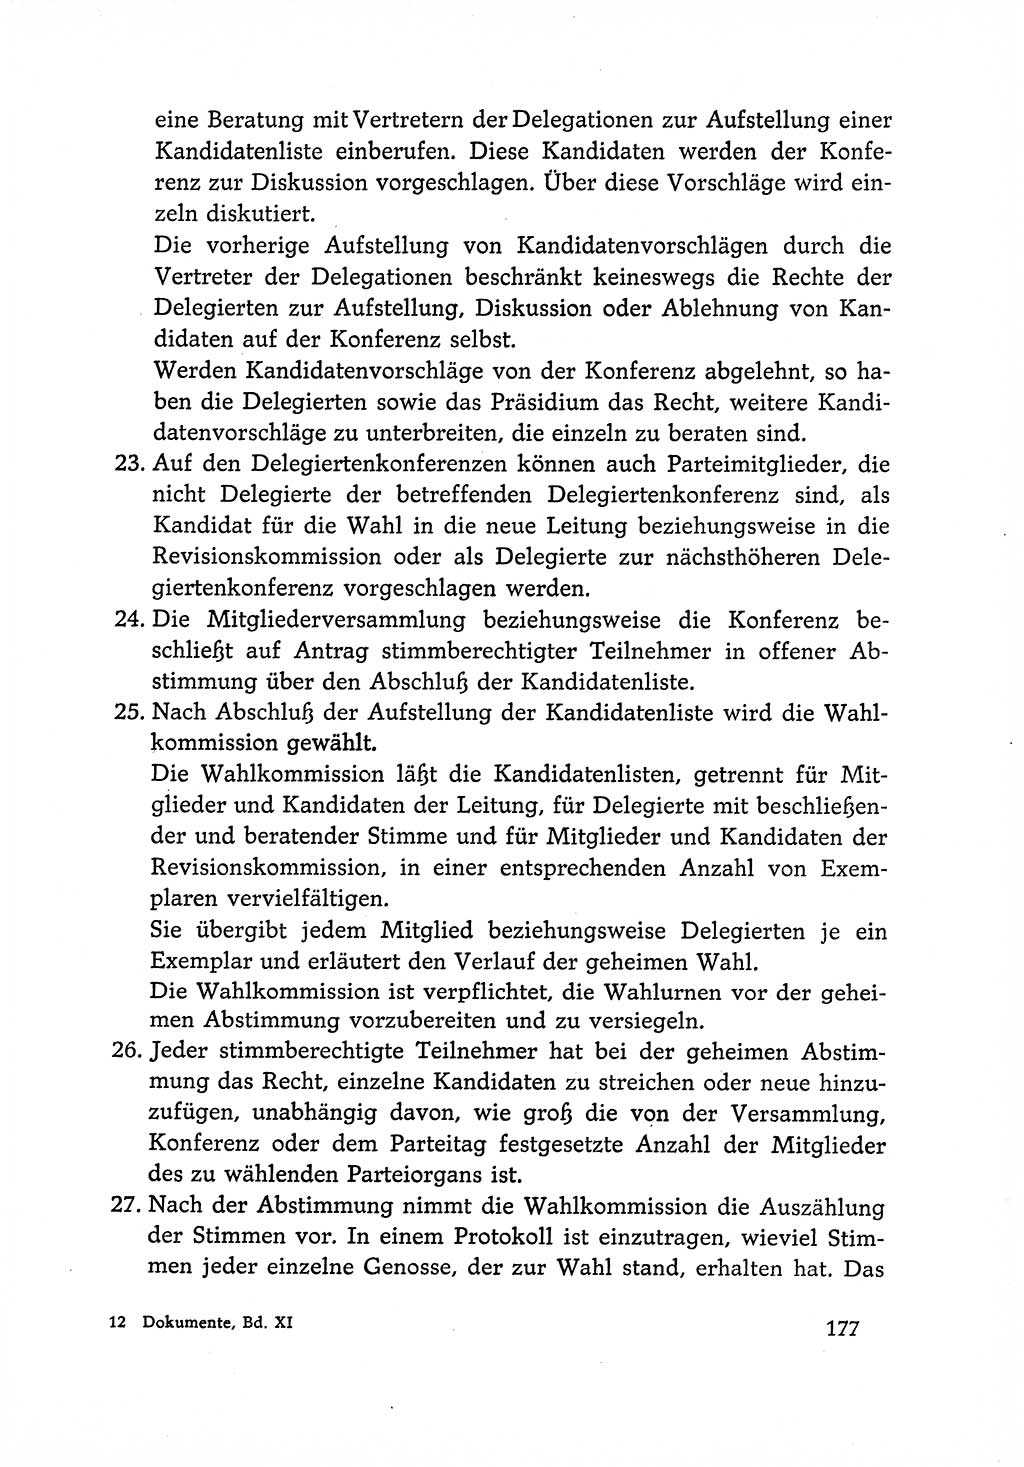 Dokumente der Sozialistischen Einheitspartei Deutschlands (SED) [Deutsche Demokratische Republik (DDR)] 1966-1967, Seite 177 (Dok. SED DDR 1966-1967, S. 177)